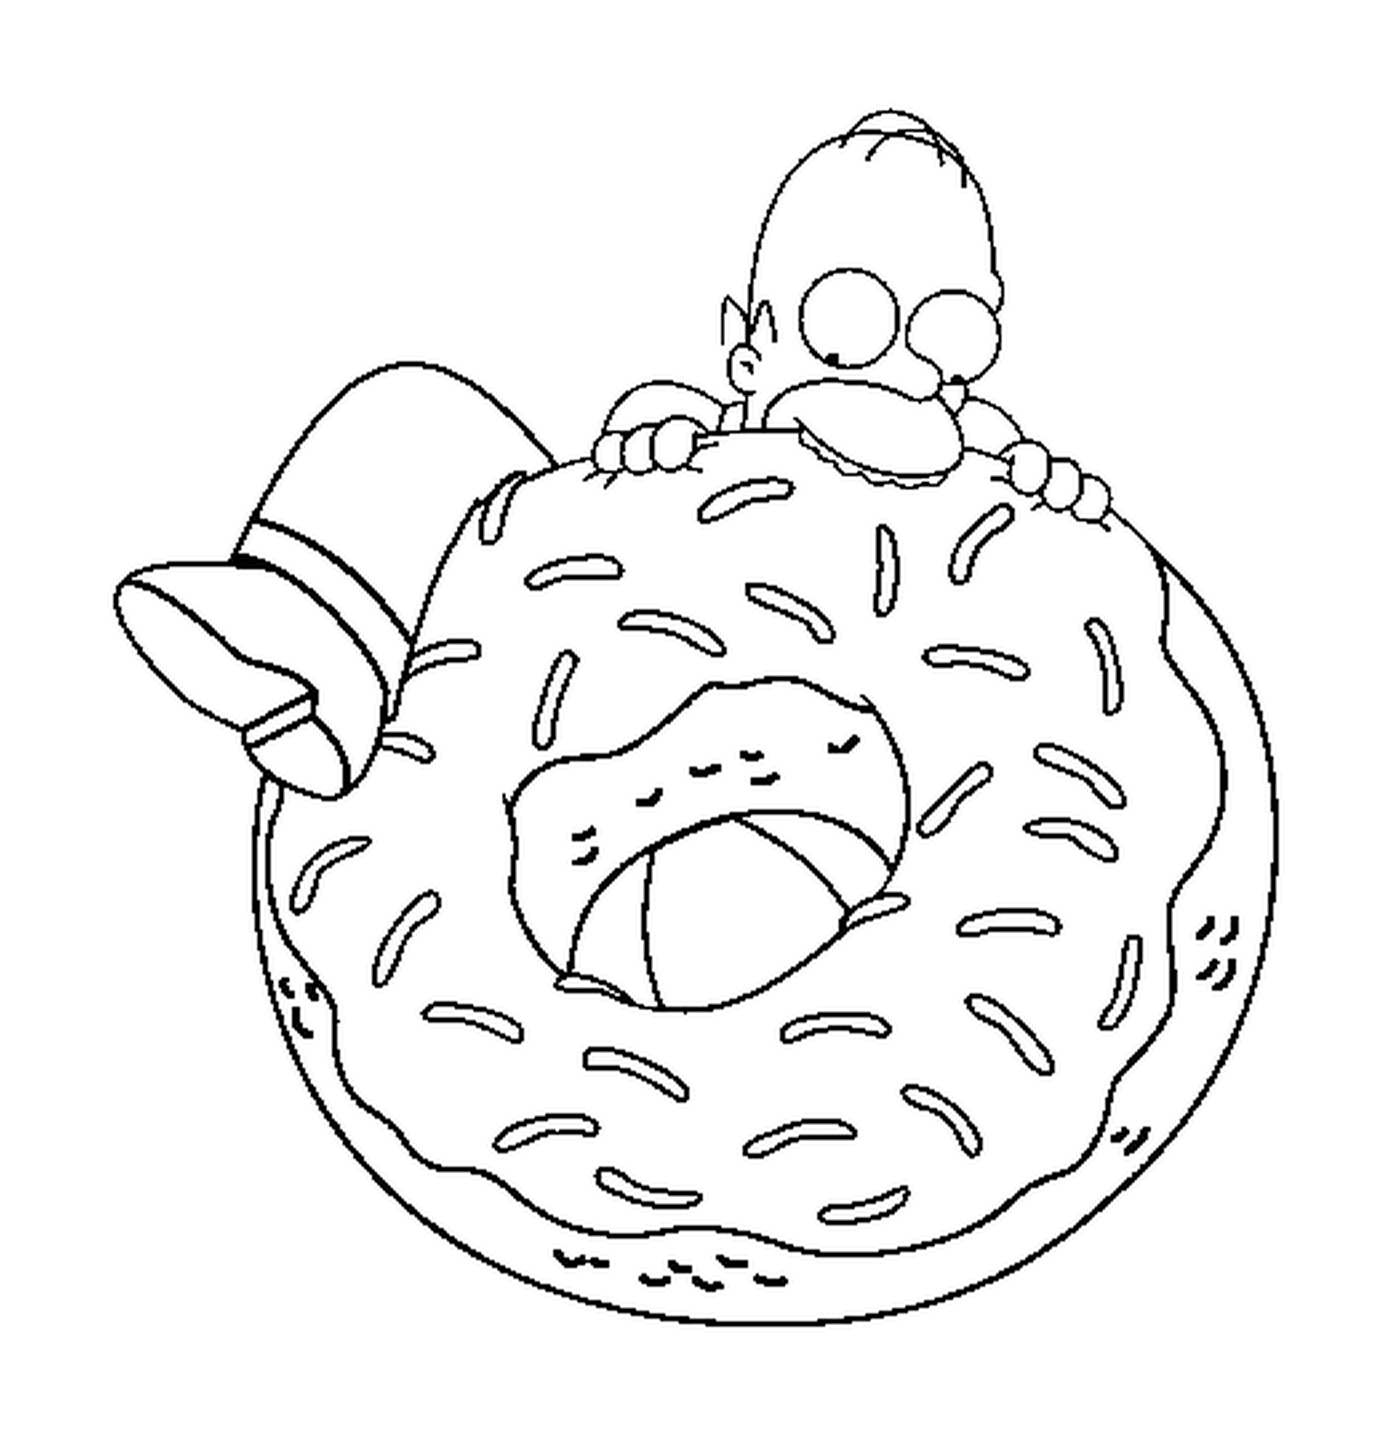  荷马想吃一个大甜甜甜圈 